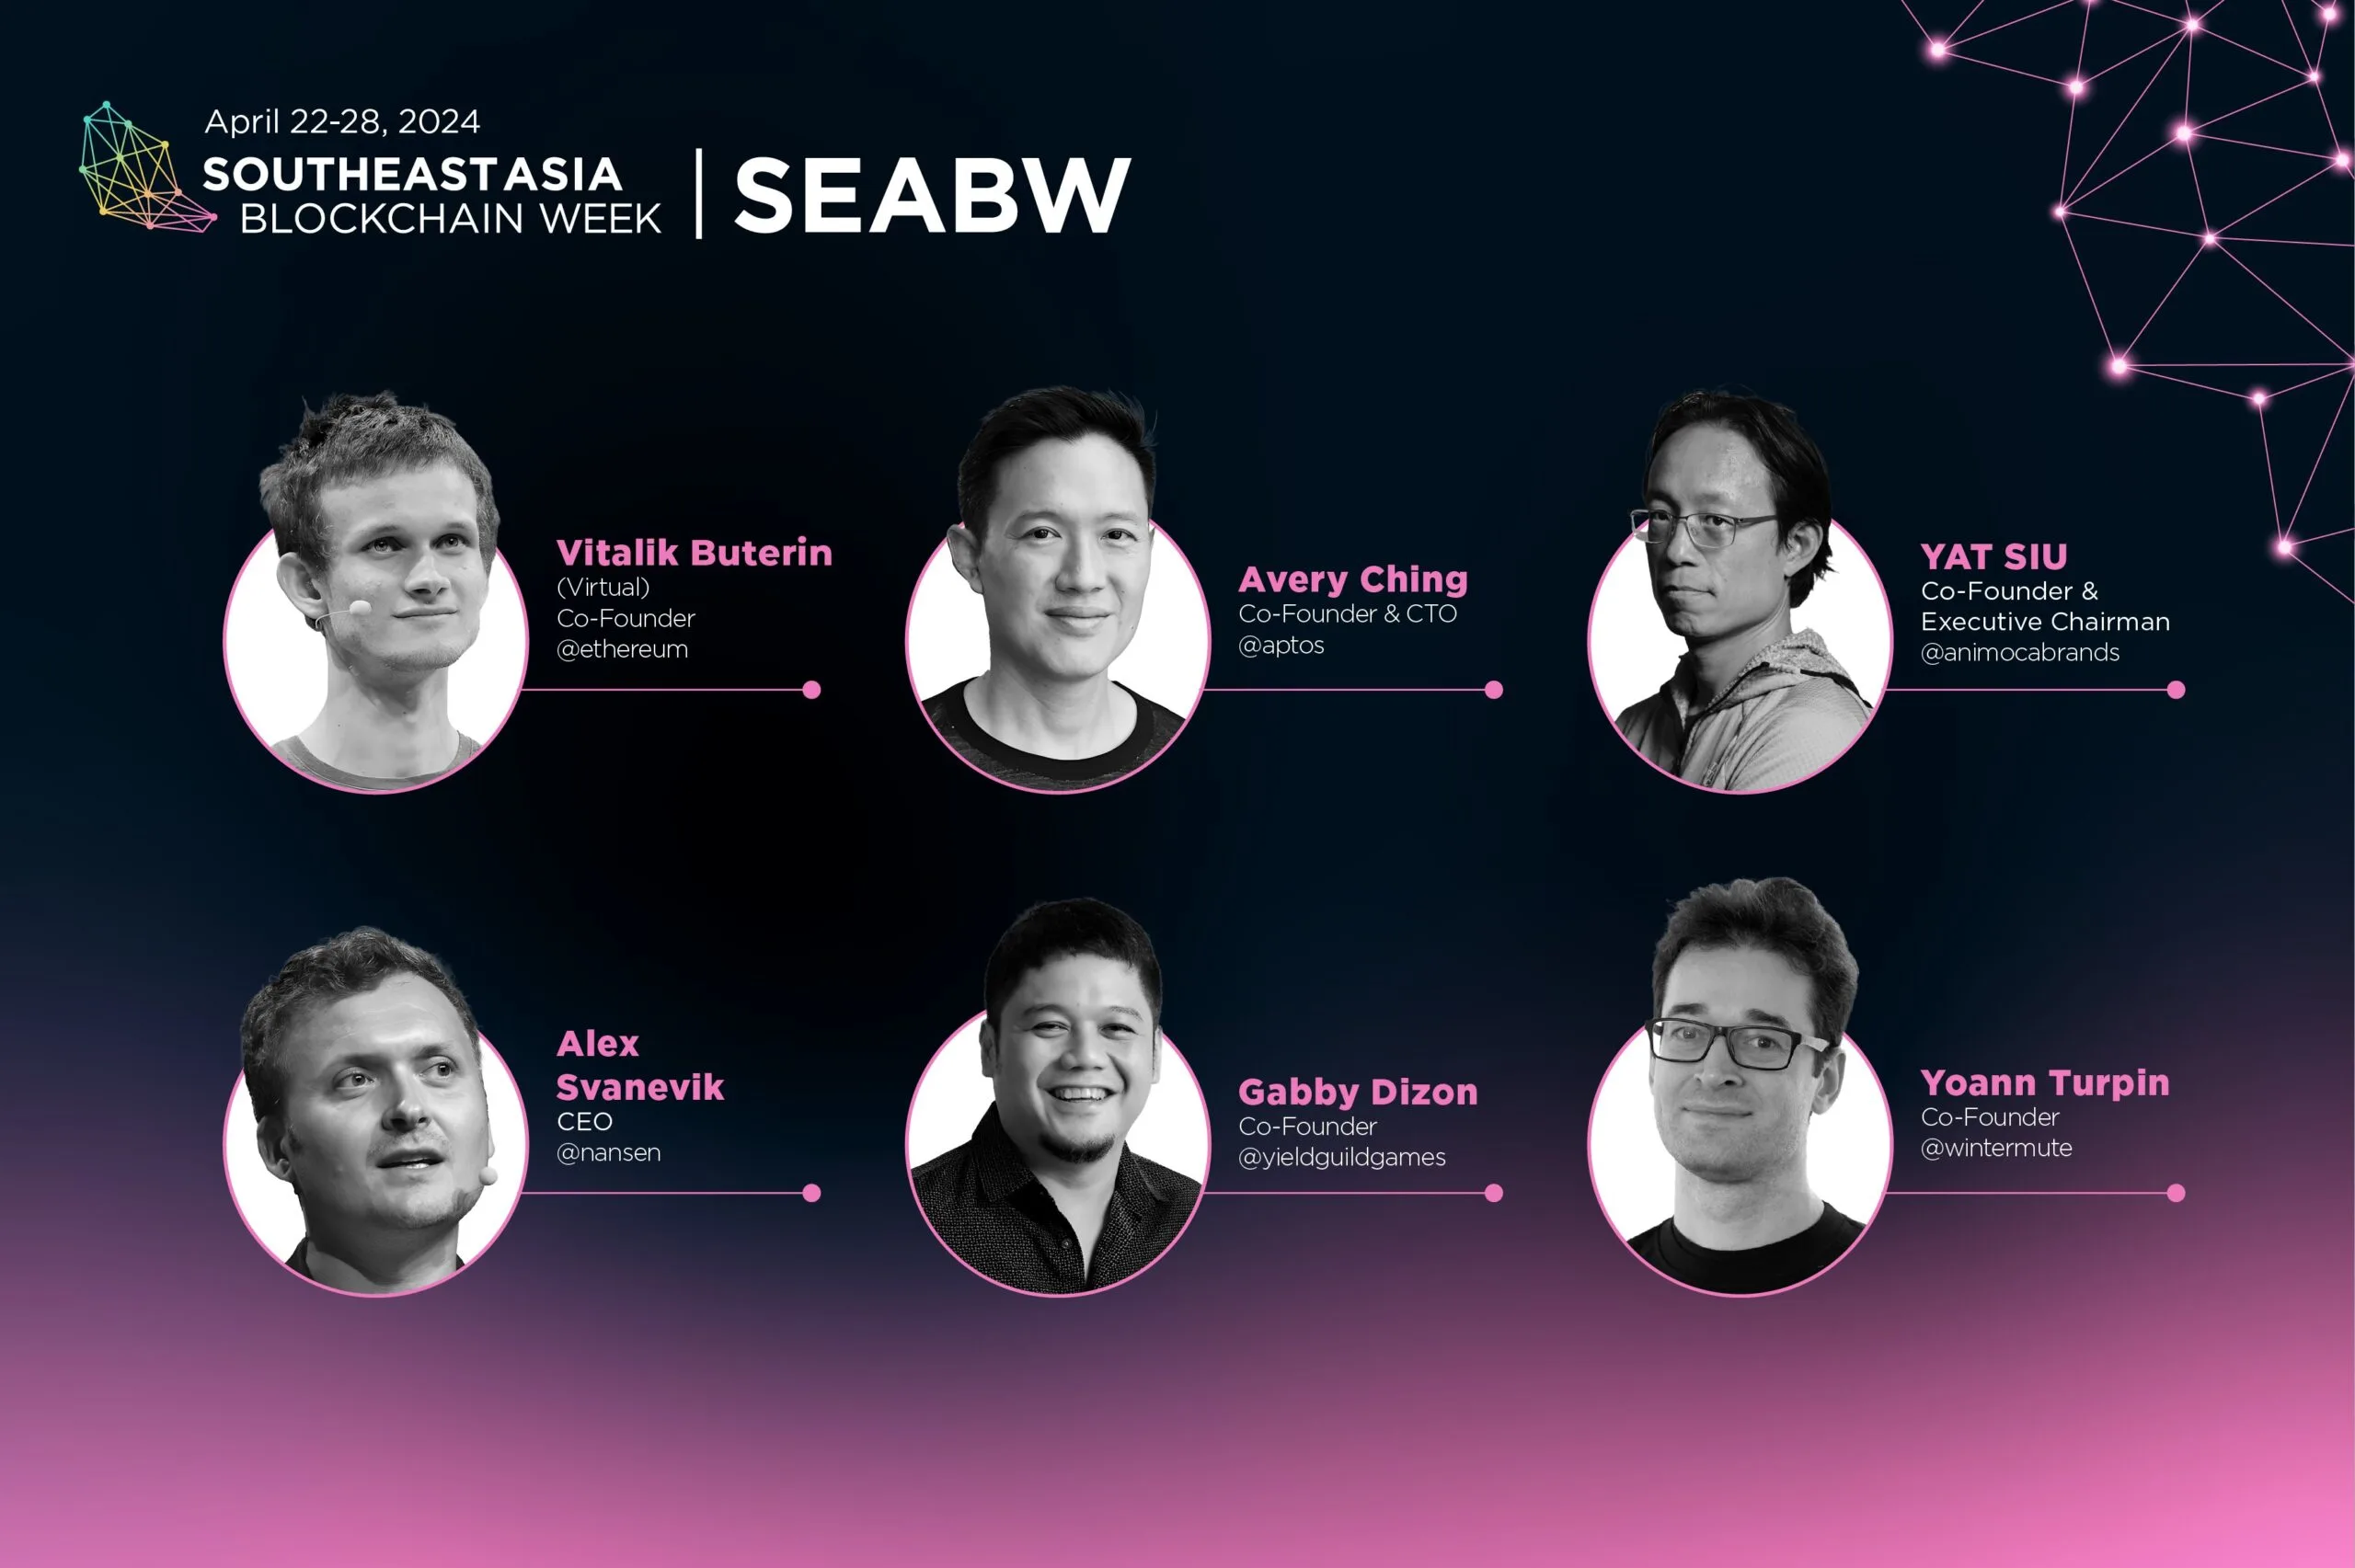 以太坊创始人 Vitalik 和 Aptos 联合创始人 Avery Ching 将出席 SEABW2024